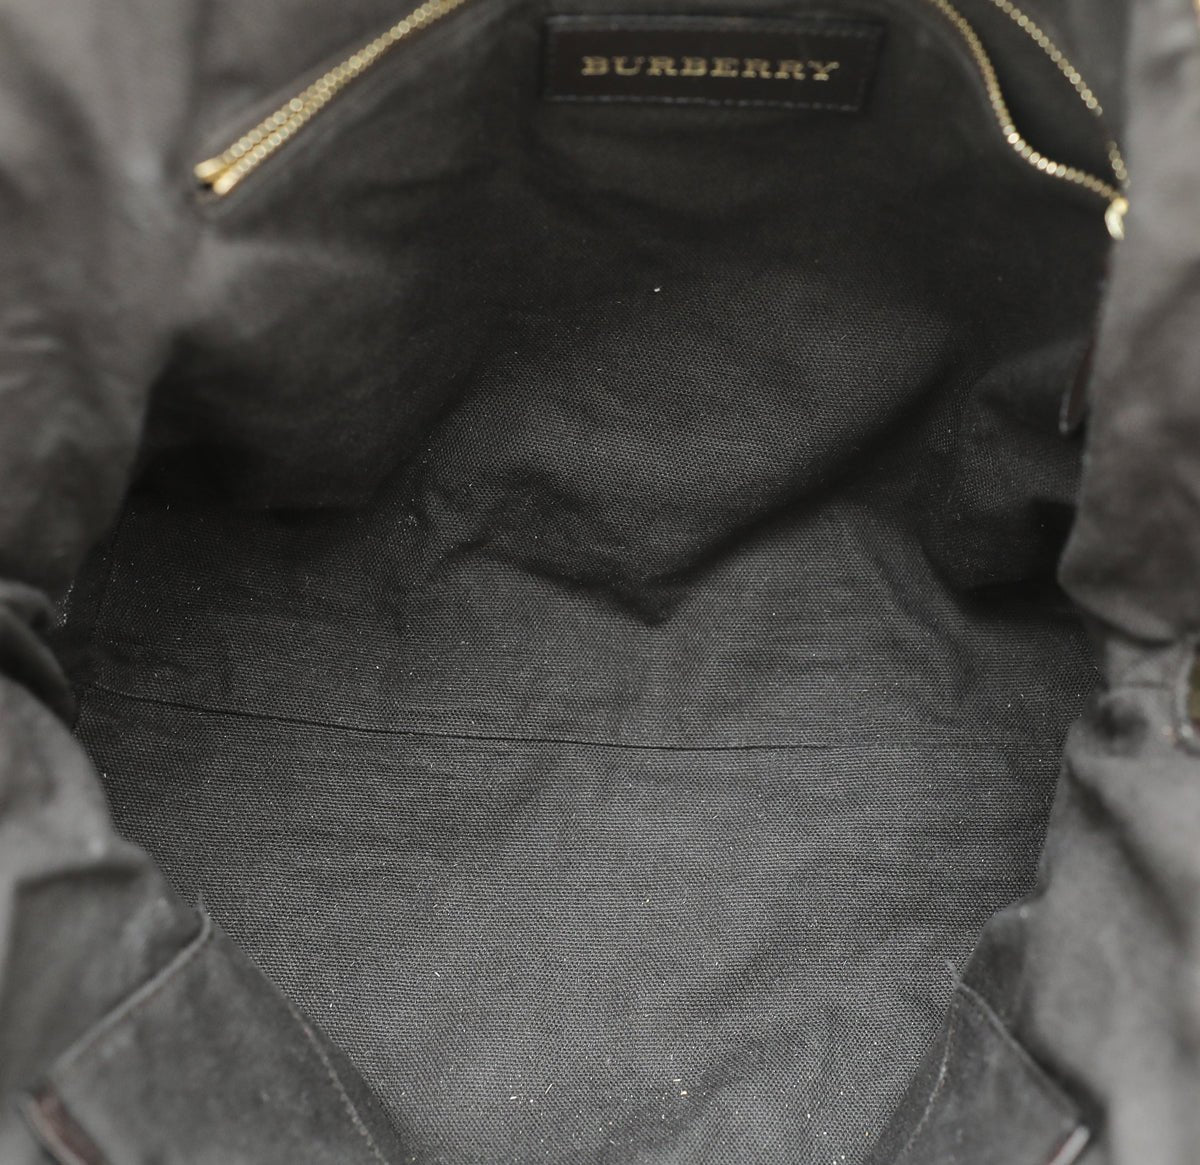 Burberry - Burberry Chocolate Haymarket Check Medium Primrose Tote Bag | The Closet